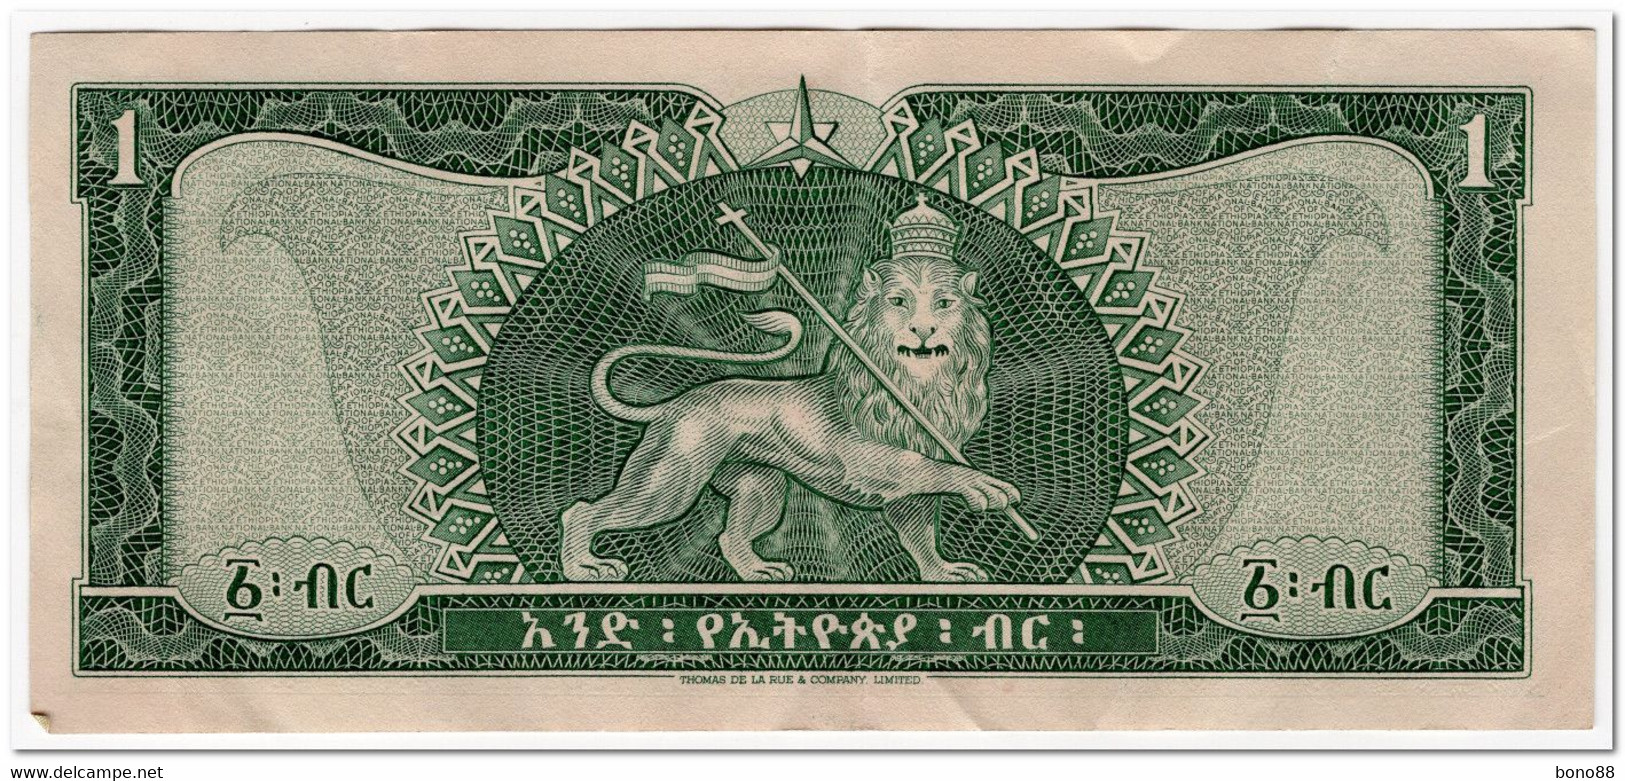 ETHIOPIA,1 DOLLAR,1966,P.25,CLEAN VF+ - Aethiopien